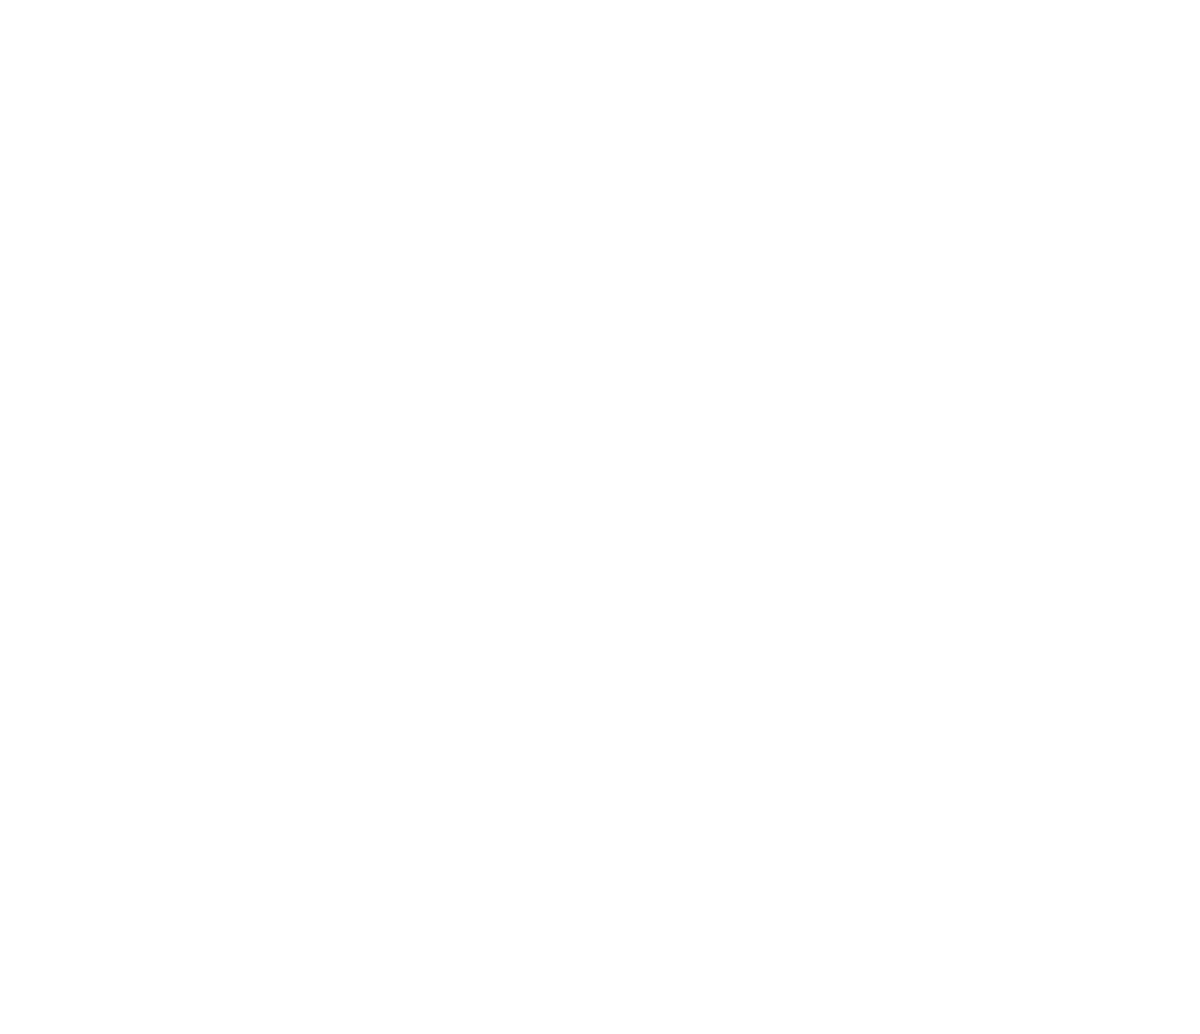 FiNUM Logo